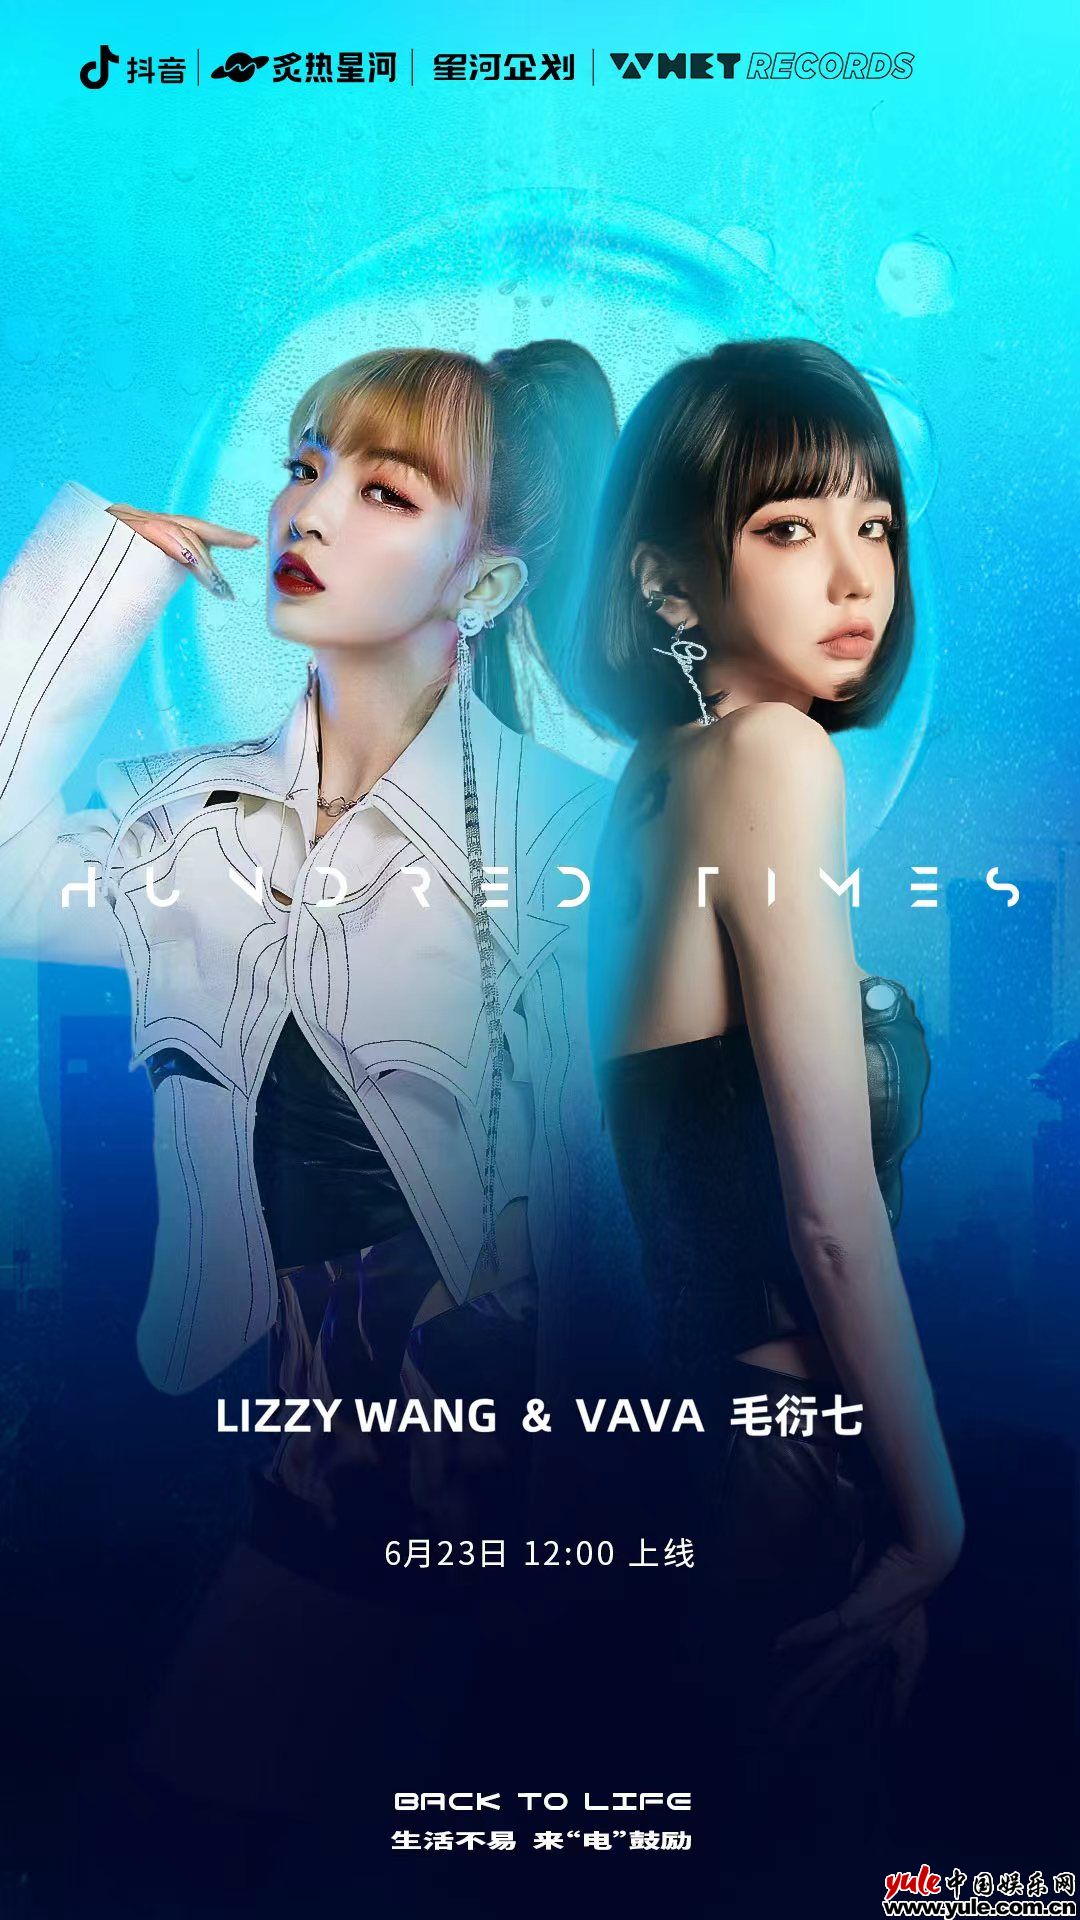 杏悦2平台手机登录VaVa毛衍七携手Lizzy Wang王梦笛打造全新单曲《Hundred Times》 个性说唱触发绝妙氛围感